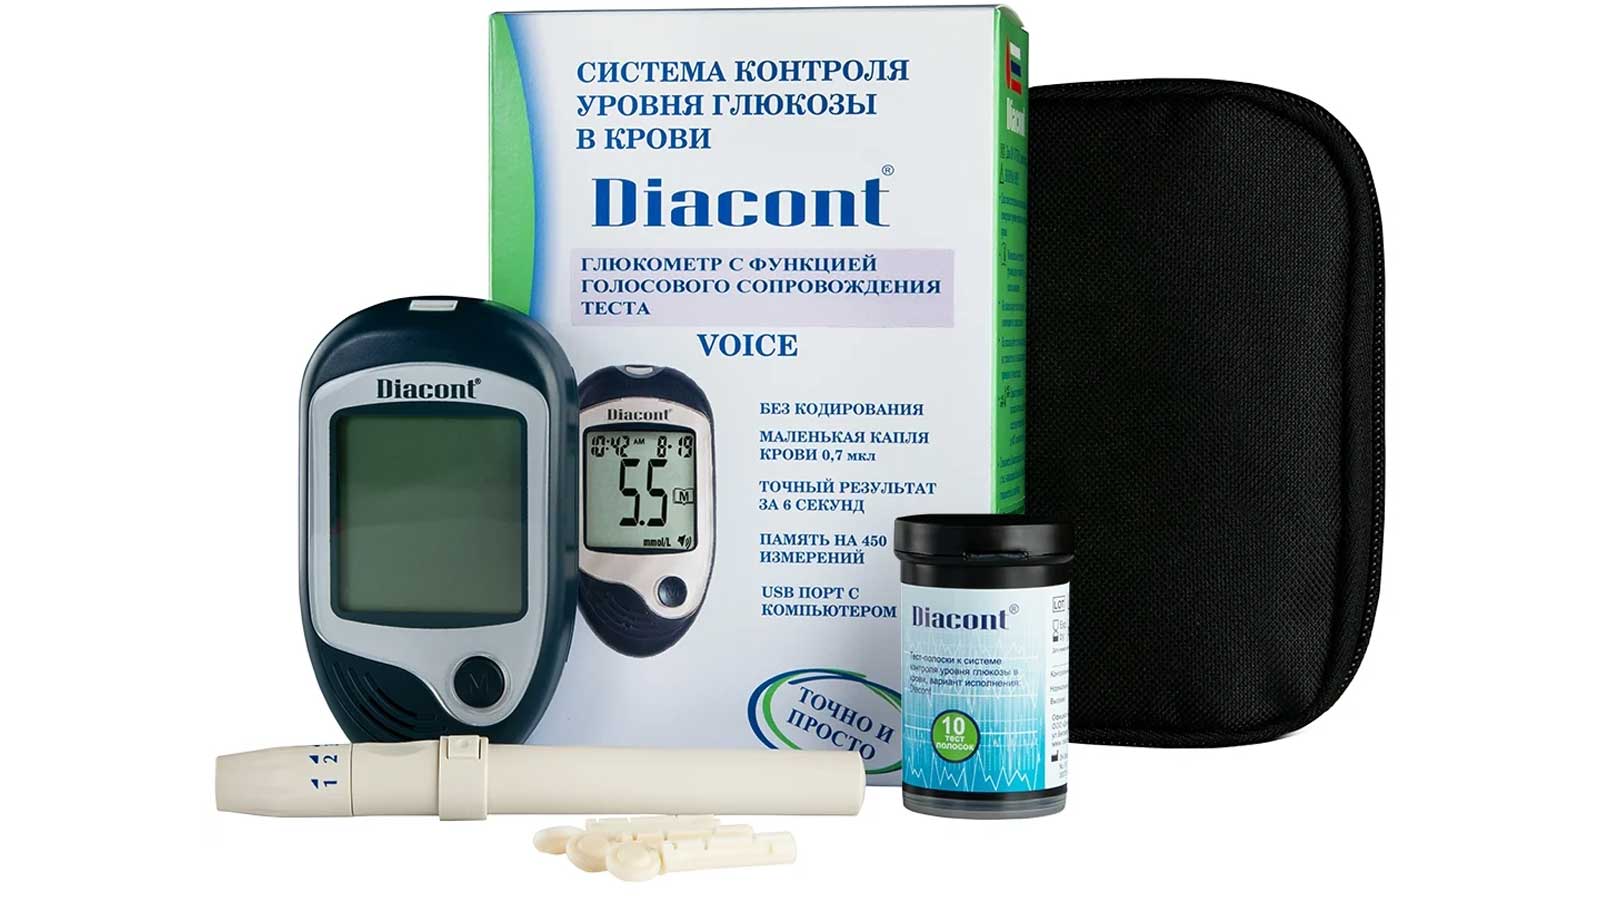 Глюкометр Диаконт (Diacont) - точный, быстрый и удобный